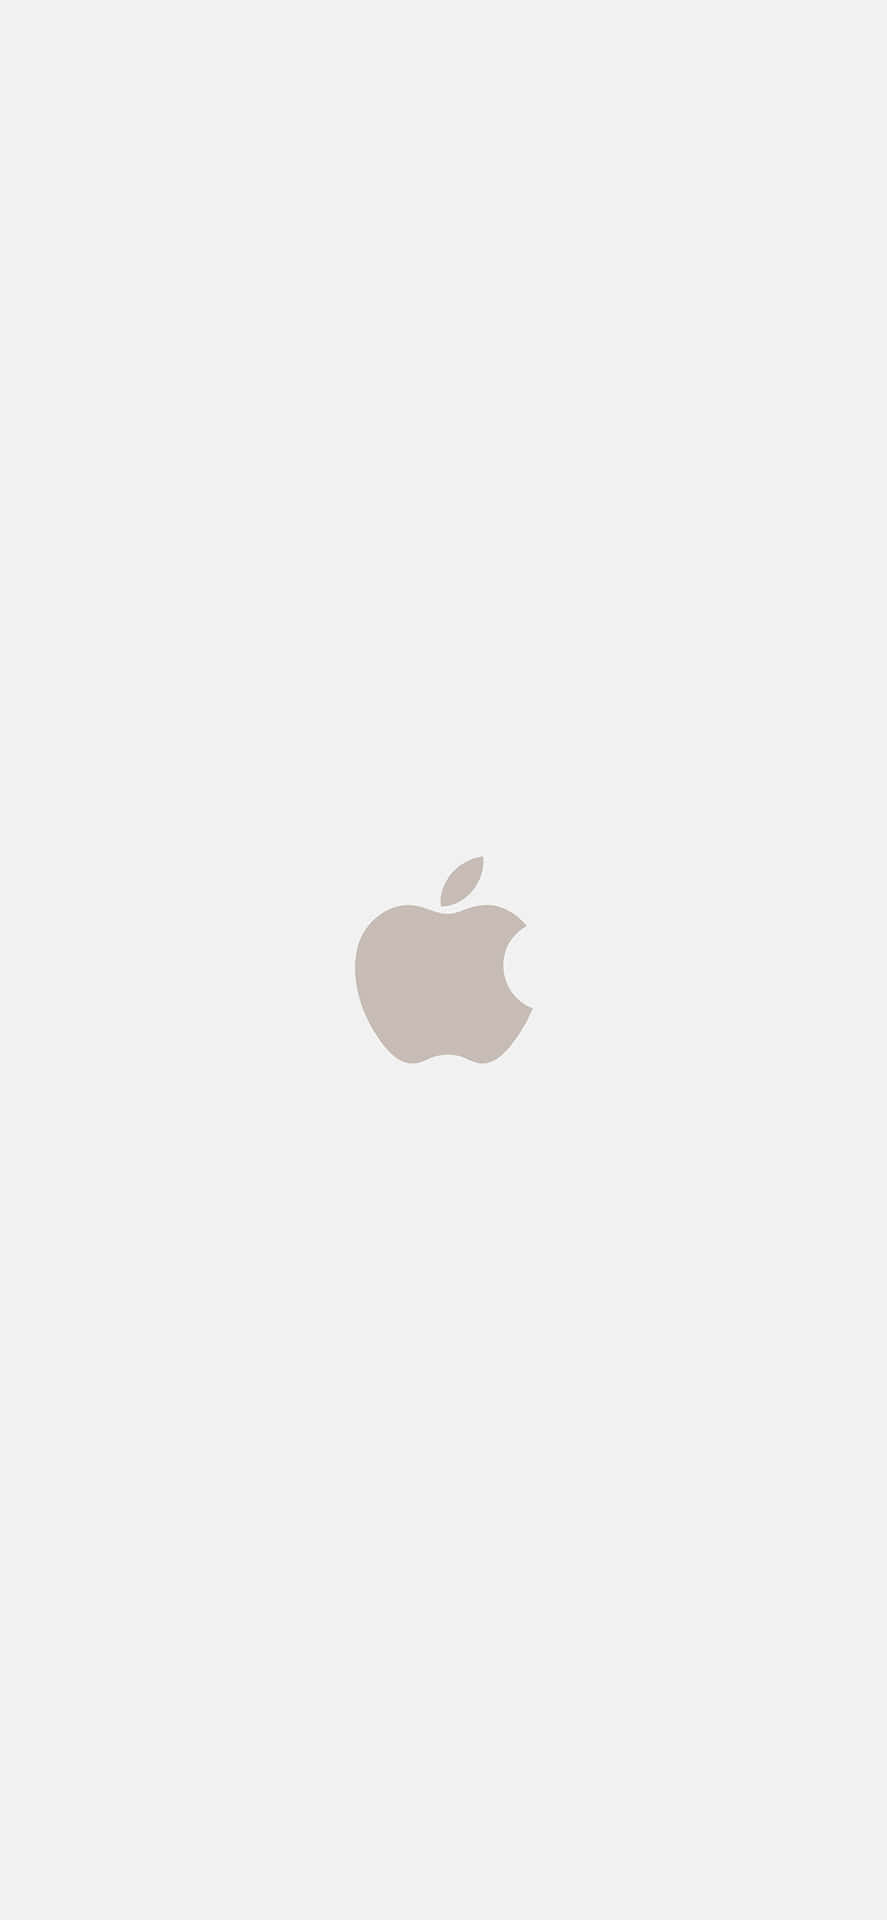 Fondode Pantalla Para El Iphone X En Color Beige Con El Logotipo De Apple. Fondo de pantalla